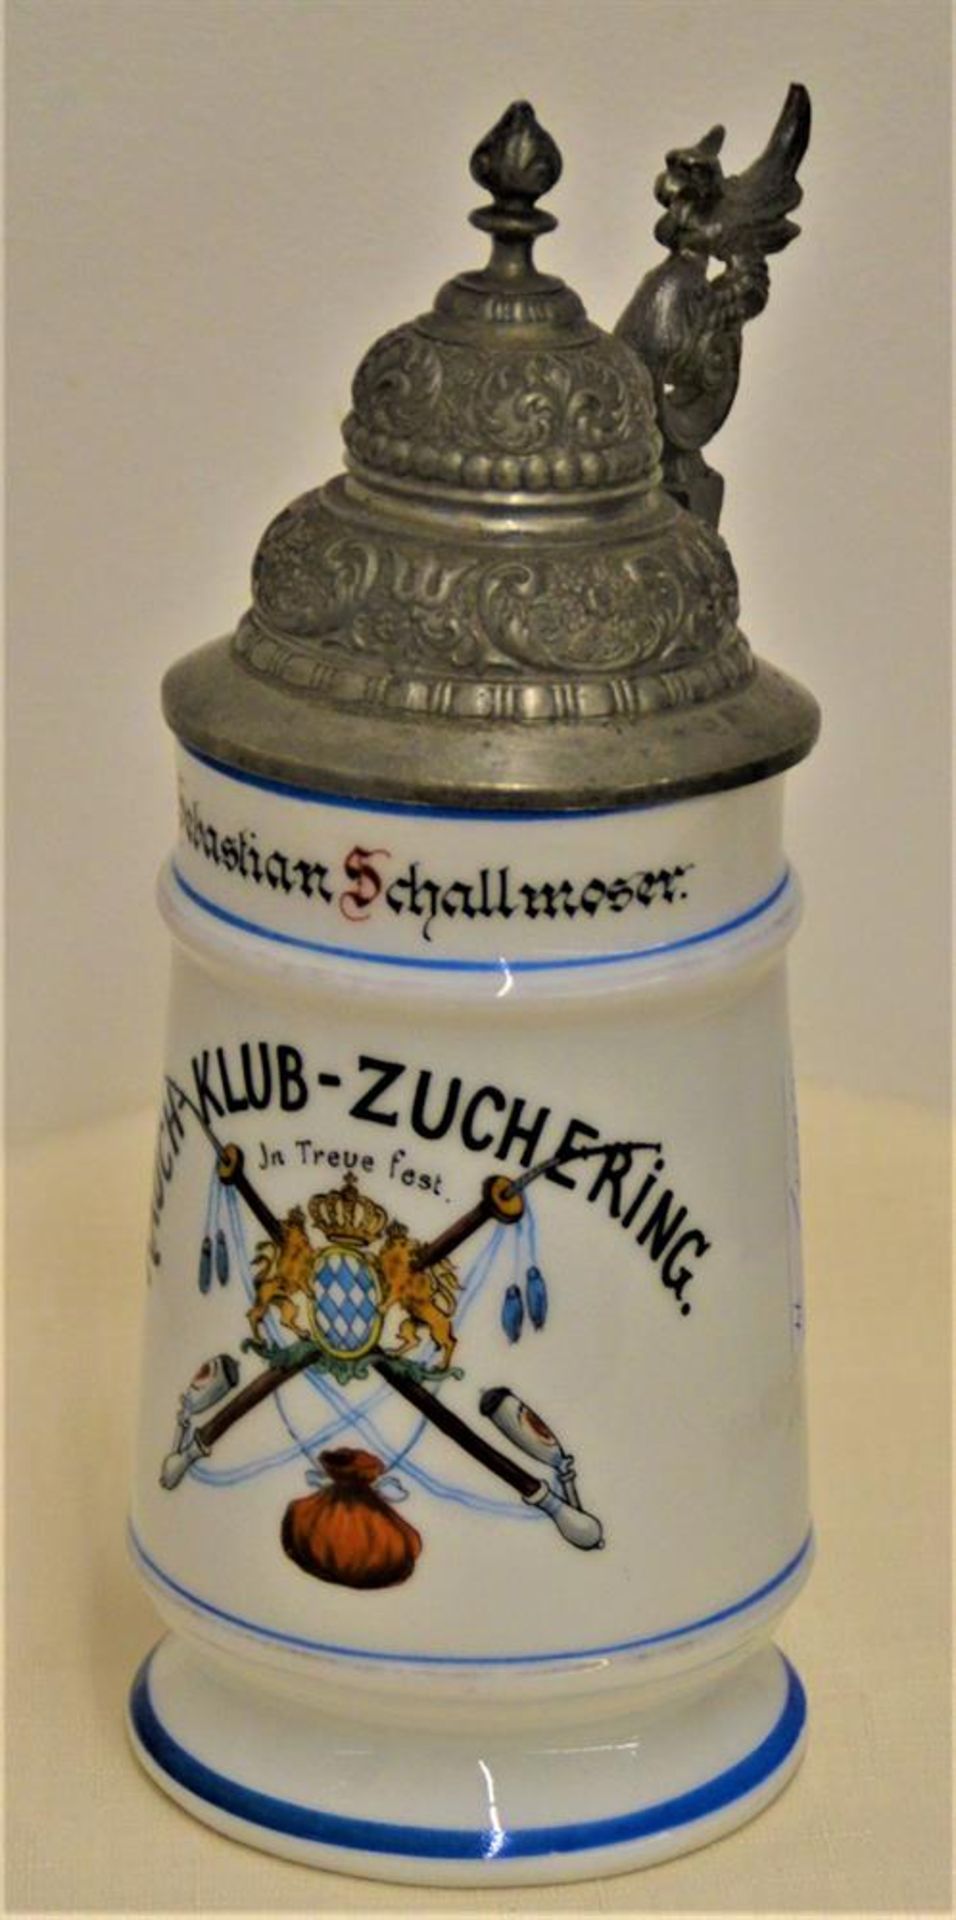 Porzellan Bierkrug 1/2 L mit Bodenbild, Reservistenkrug, "Rauch Klub Zuchering" "In Treue Fest",